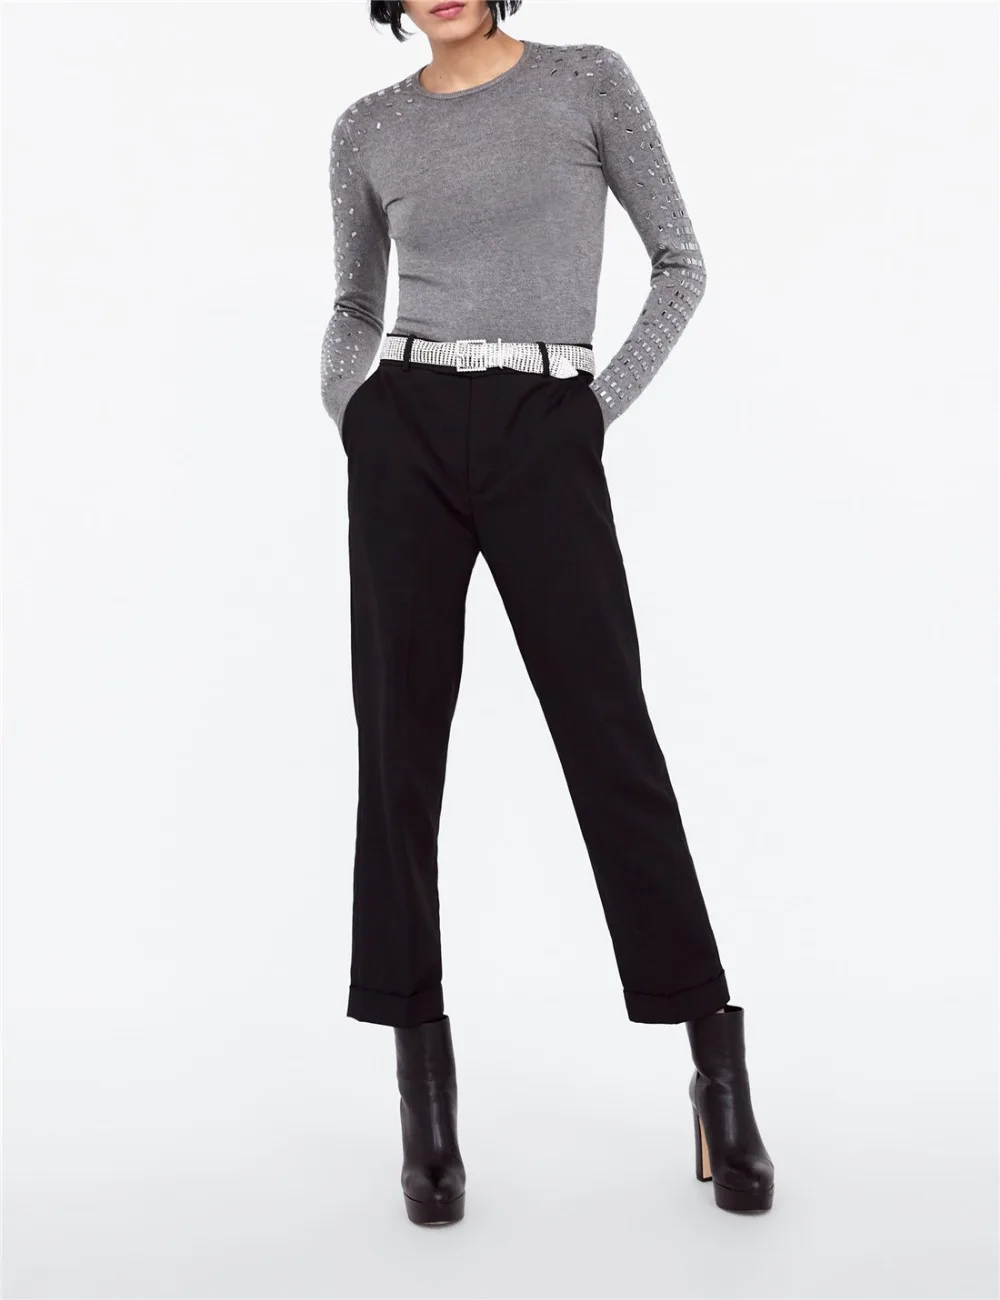 Arvinxia ZA модные облегающие Женские свитера с круглым вырезом, Новые однотонные женские свитера с аппликацией, шикарные рубашки с высокой талией и длинными рукавами